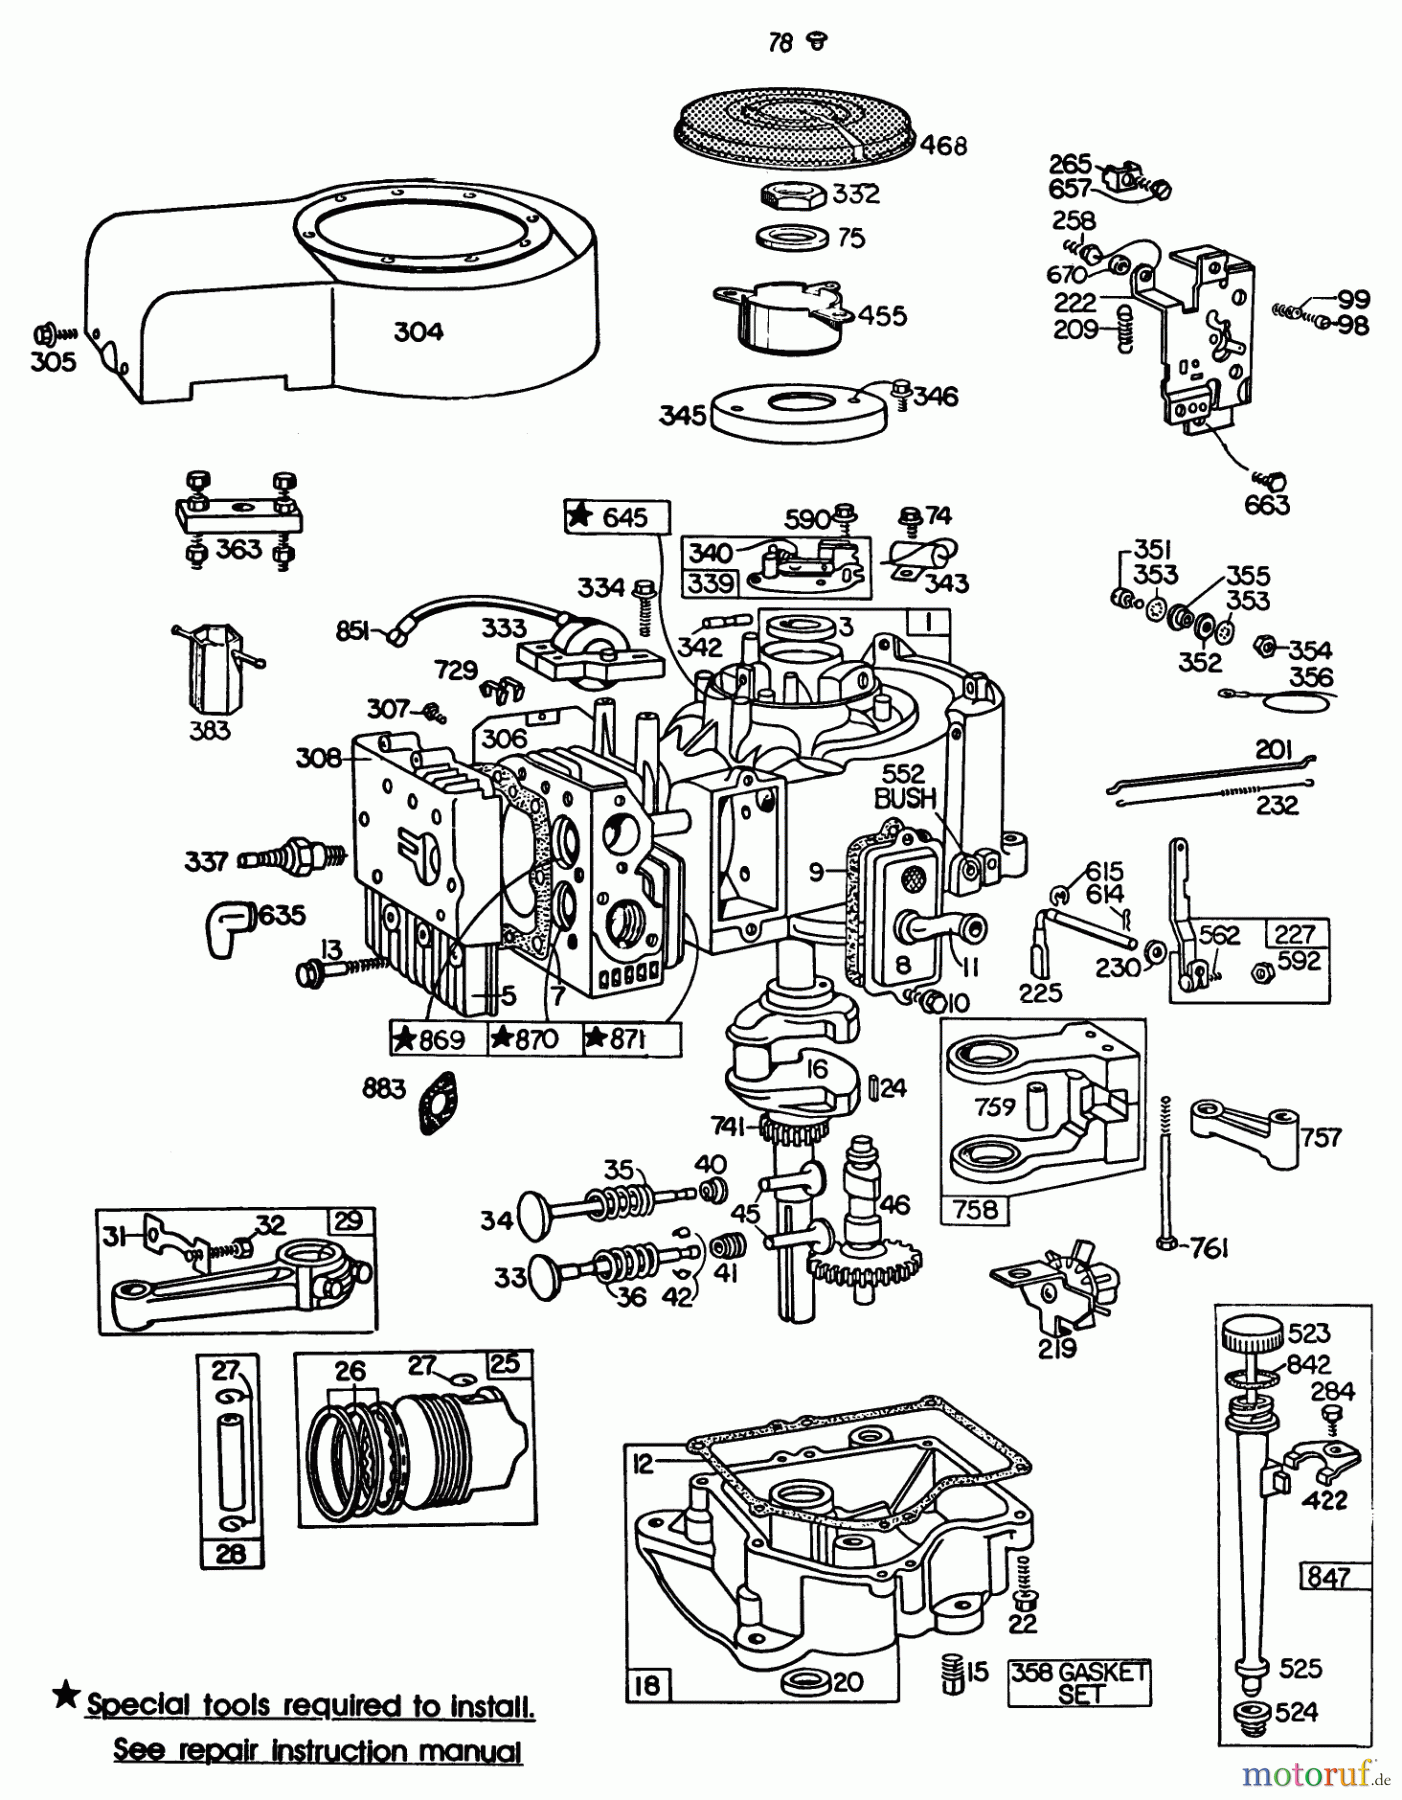  Toro Neu Mowers, Lawn & Garden Tractor Seite 1 57300 (8-32) - Toro 8-32 Front Engine Rider, 1983 (3000001-3999999) ENGINE BRIGGS & STRATTON MODEL 252707-0230-01 (MODEL 57360) #2